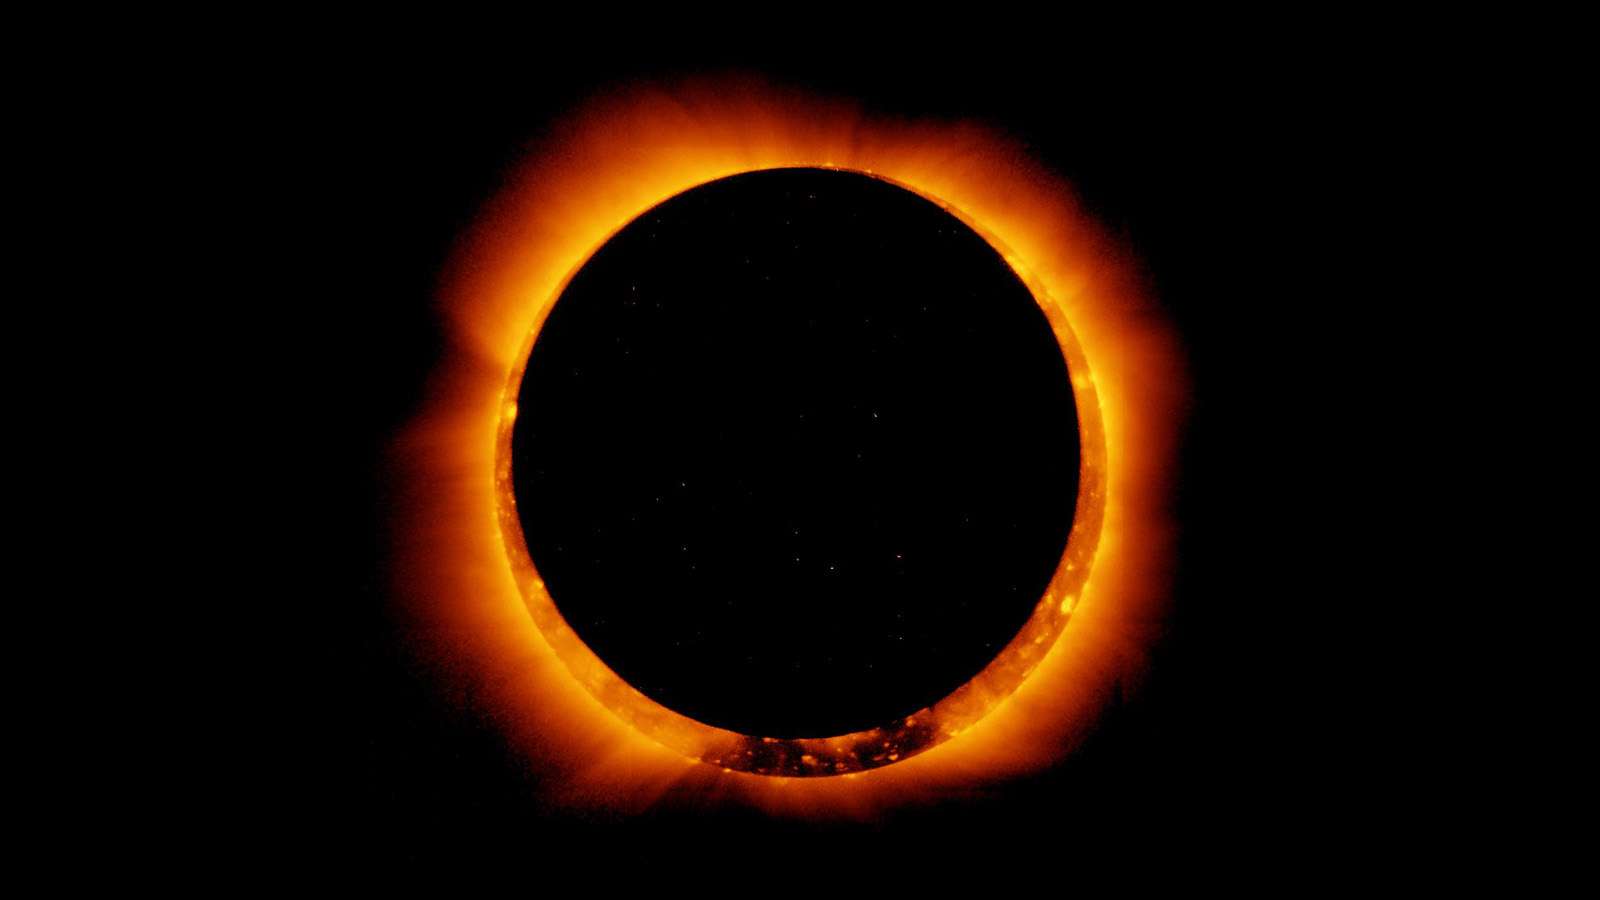 Nesta imagem, vê-se o registro, feito pelo satélite Hinode, do Eclipse Solar Anular de 4 de janeiro de 2017. Eclipses solares ocorrem quando o Sol, a Lua e a Terra se alinham. Para que isso aconteça, a Lua precisa estar na fase de Lua Nova - que é quando a órbita da Lua a coloca entre a Terra e o Sol - durante as temporadas de eclipses, que duram cerca de 34 dias e ocorrem a cada seis meses. Uma temporada de eclipses é o período de tempo em que o Sol, a Lua e a Terra podem se alinhar no mesmo plano da orbital. Um eclipse solar anular ocorre quando o Sol, a Lua e a Terra estão devidamente alinhados, mas a Lua está mais distante em sua órbita, não cobrindo completamente o disco solar. Eclipses solares também proporcionam grandes oportunidades para a ciência, pois facilitam medições da radiação solar e da estrutura do Sol